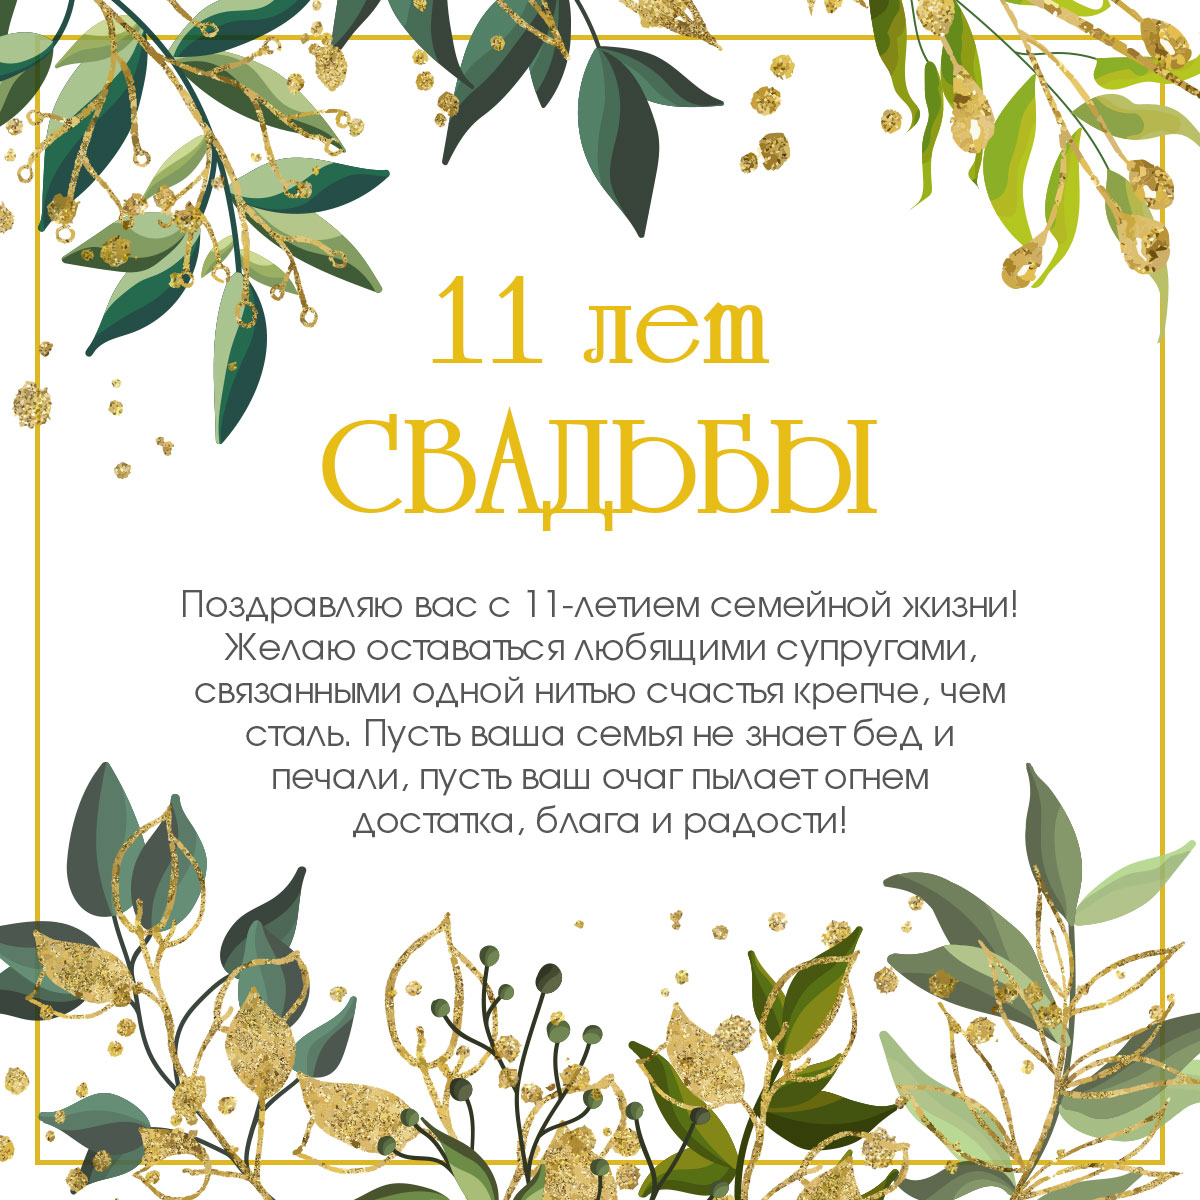 Открытка с текстом поздравления на одиннадцать лет свадьбы в золотой рамке с зелёными растениями.